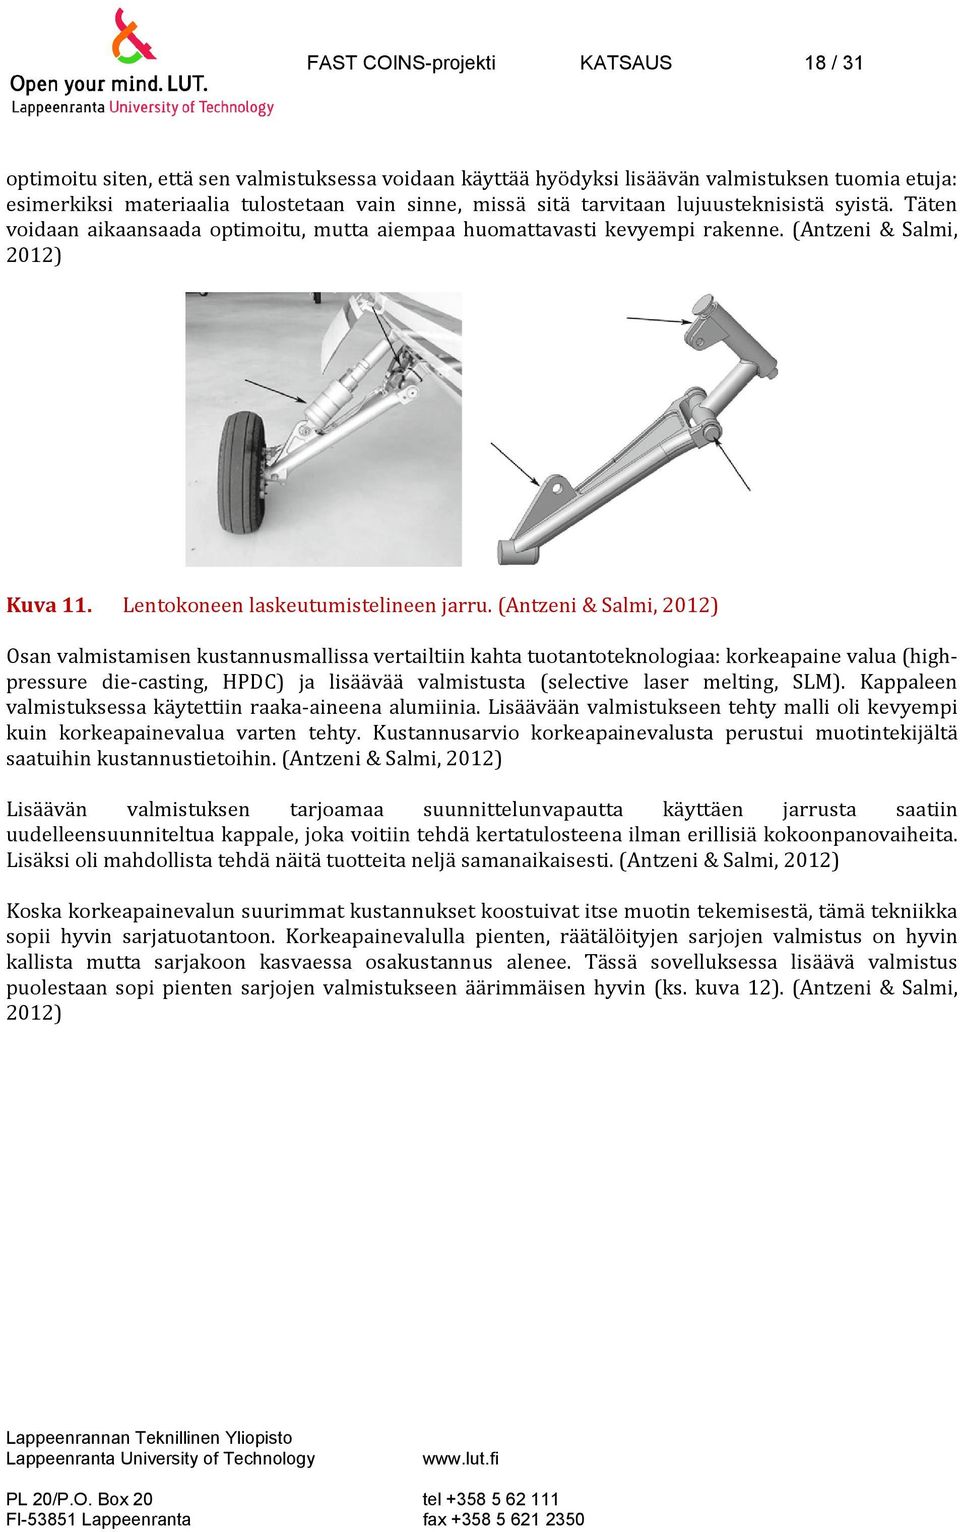 (Antzeni & Salmi, 2012) Osan valmistamisen kustannusmallissa vertailtiin kahta tuotantoteknologiaa: korkeapaine valua (highpressure die casting, HPDC) ja lisäävää valmistusta (selective laser